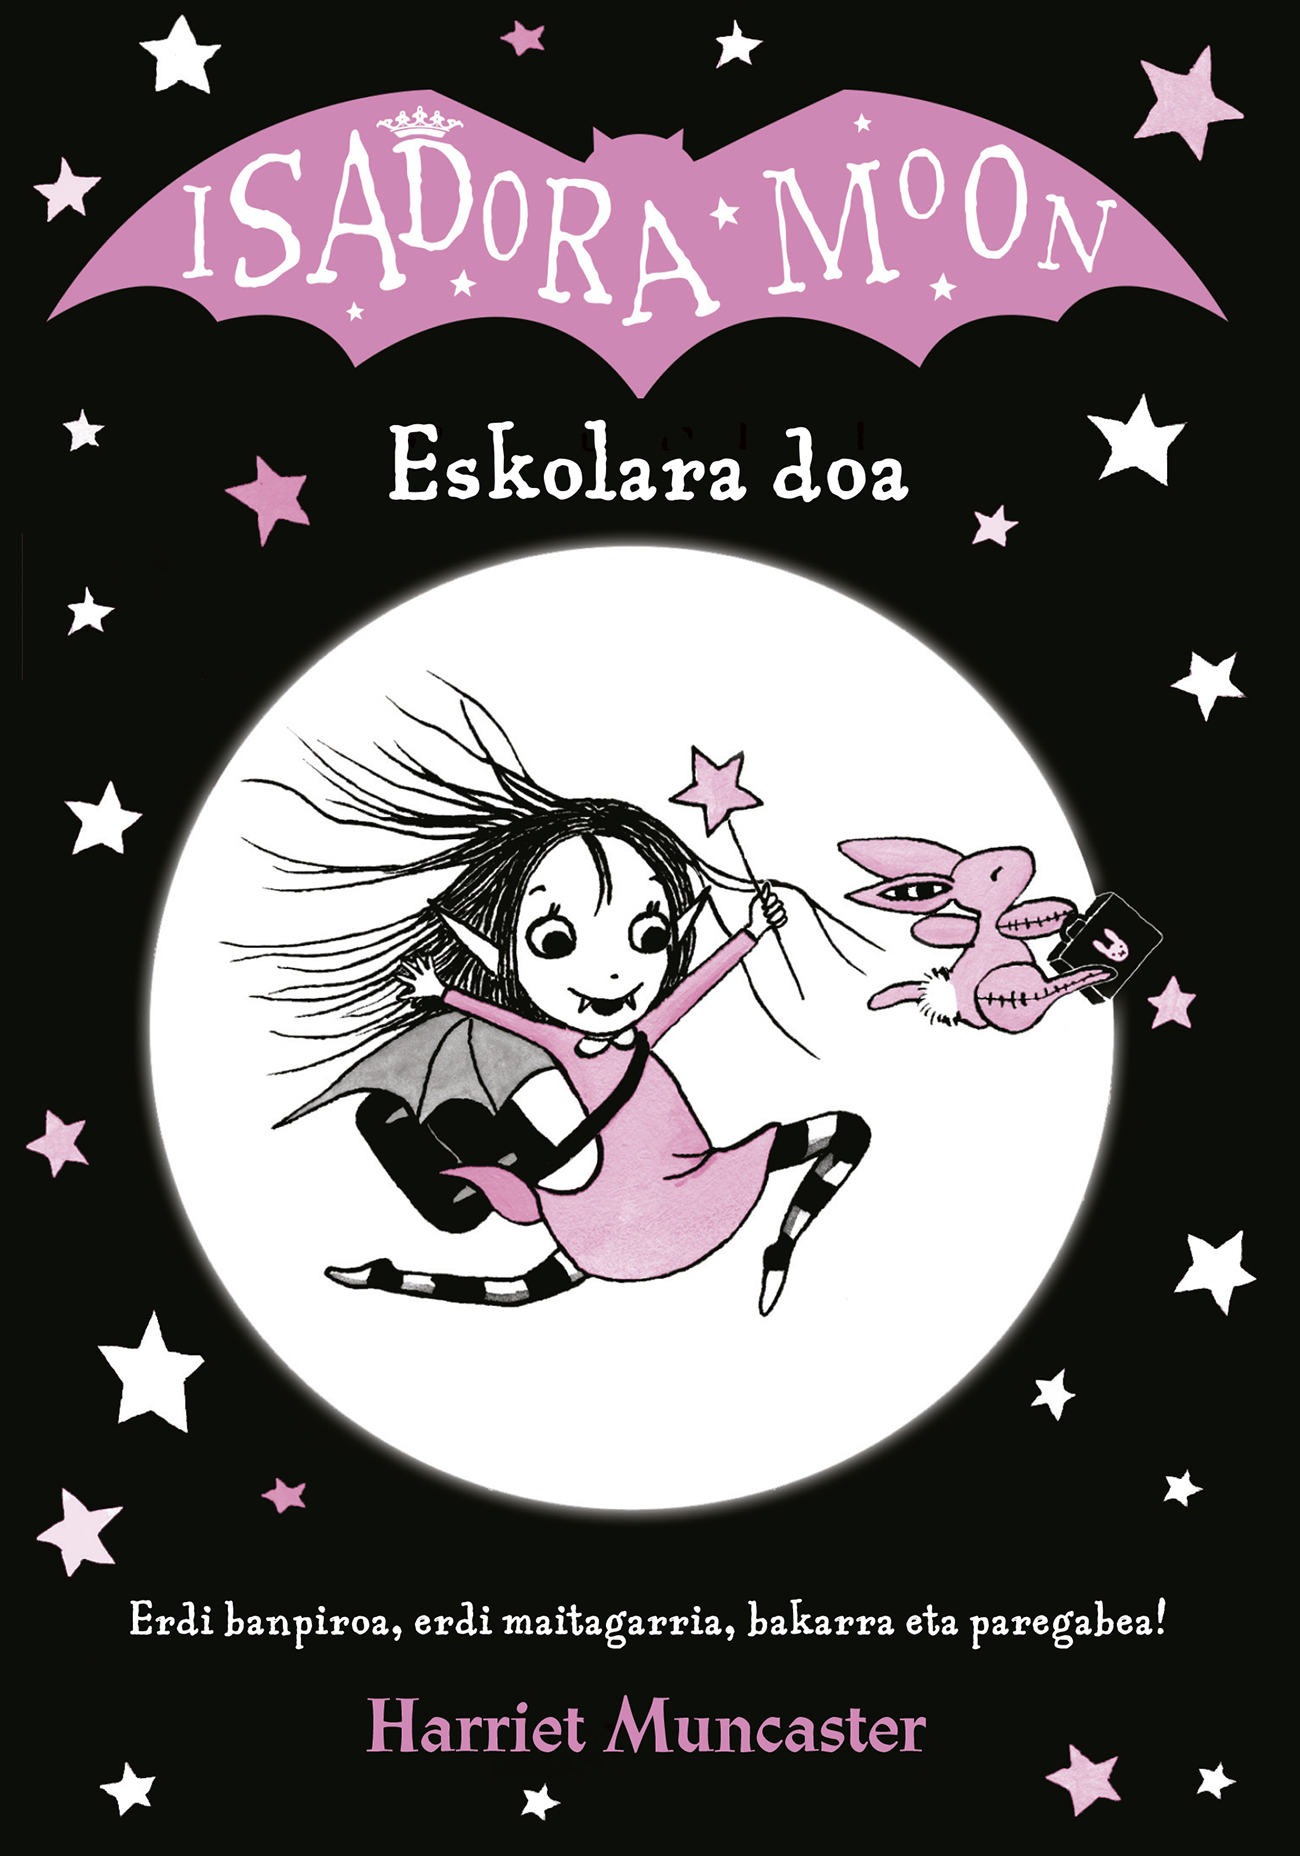 Isadora Moon y Kitty en euskera, la nueva apuesta de Mezulari